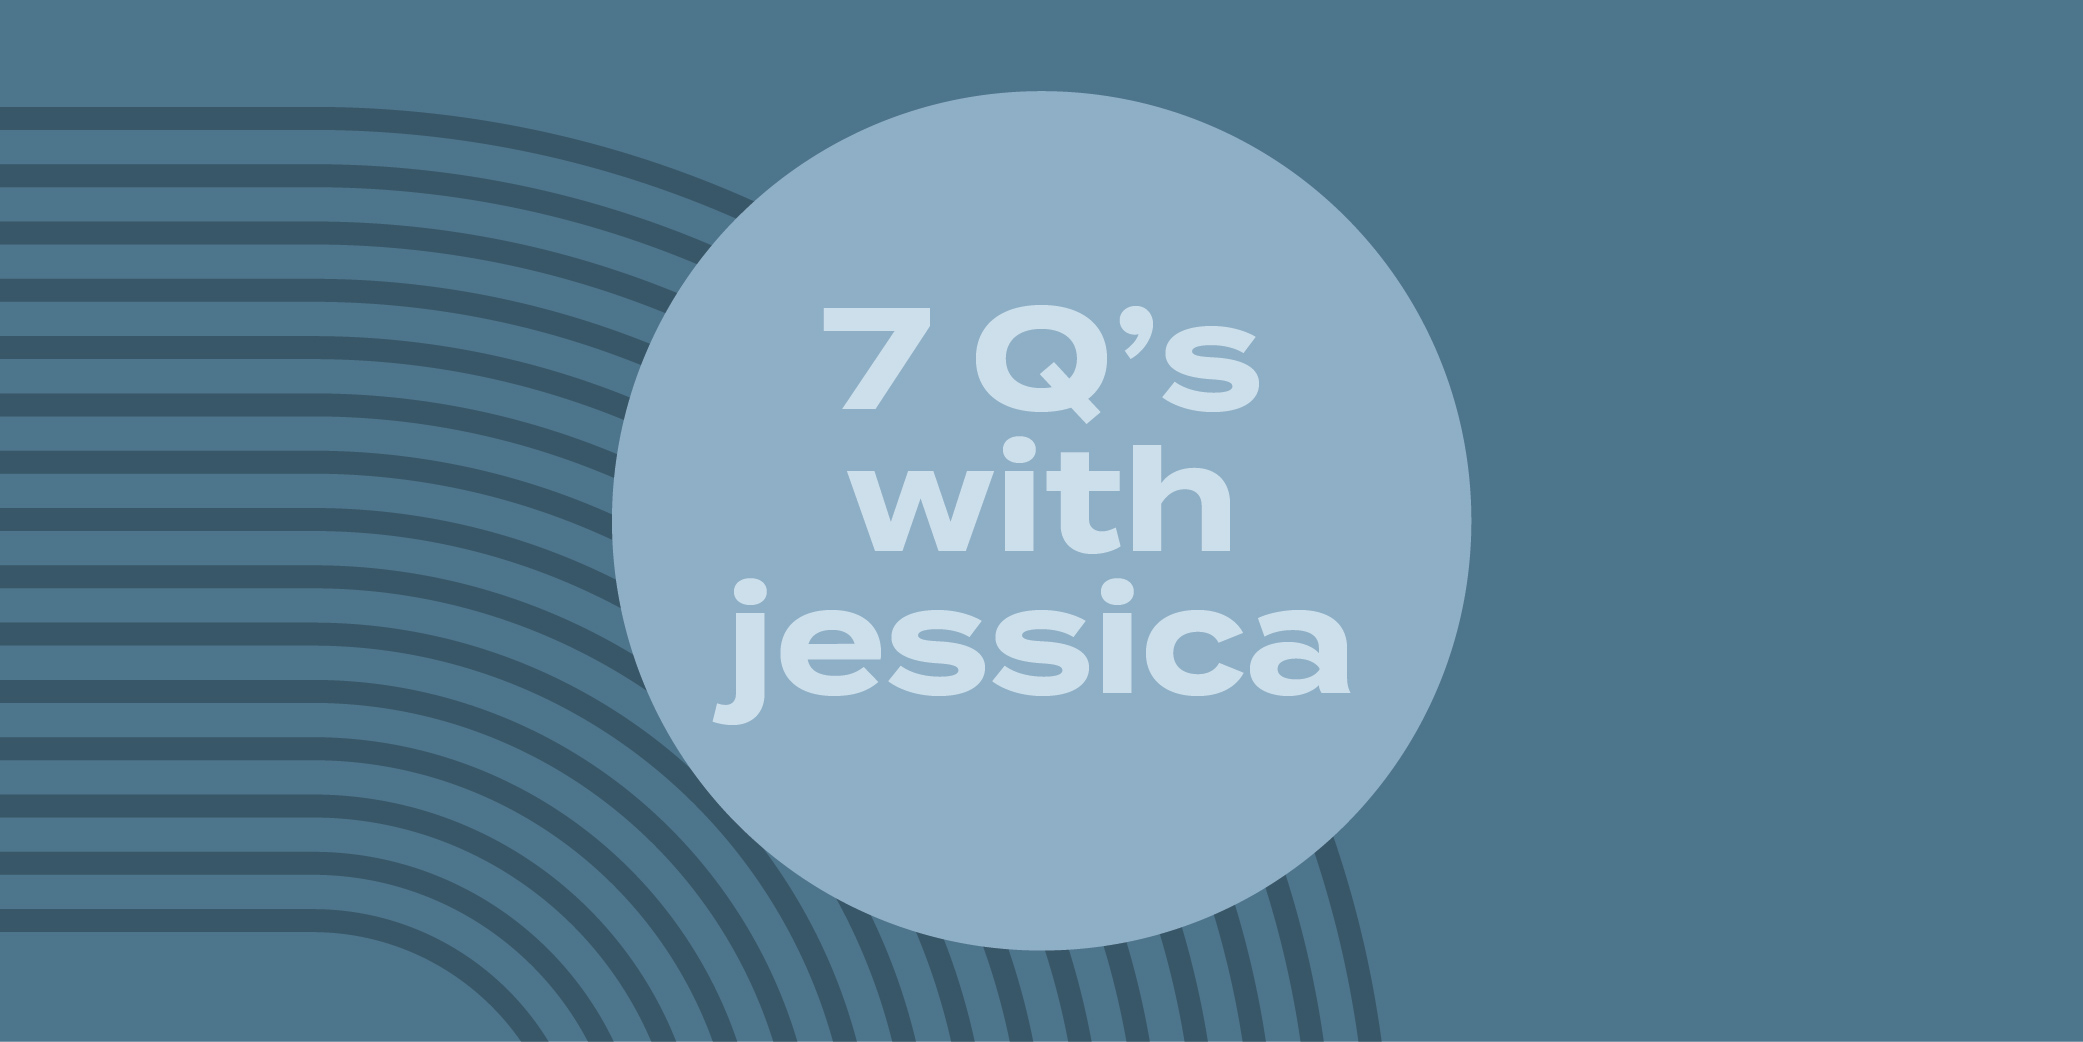 CALC-0418 Febuary Social & Blogs_7Qs Jessica